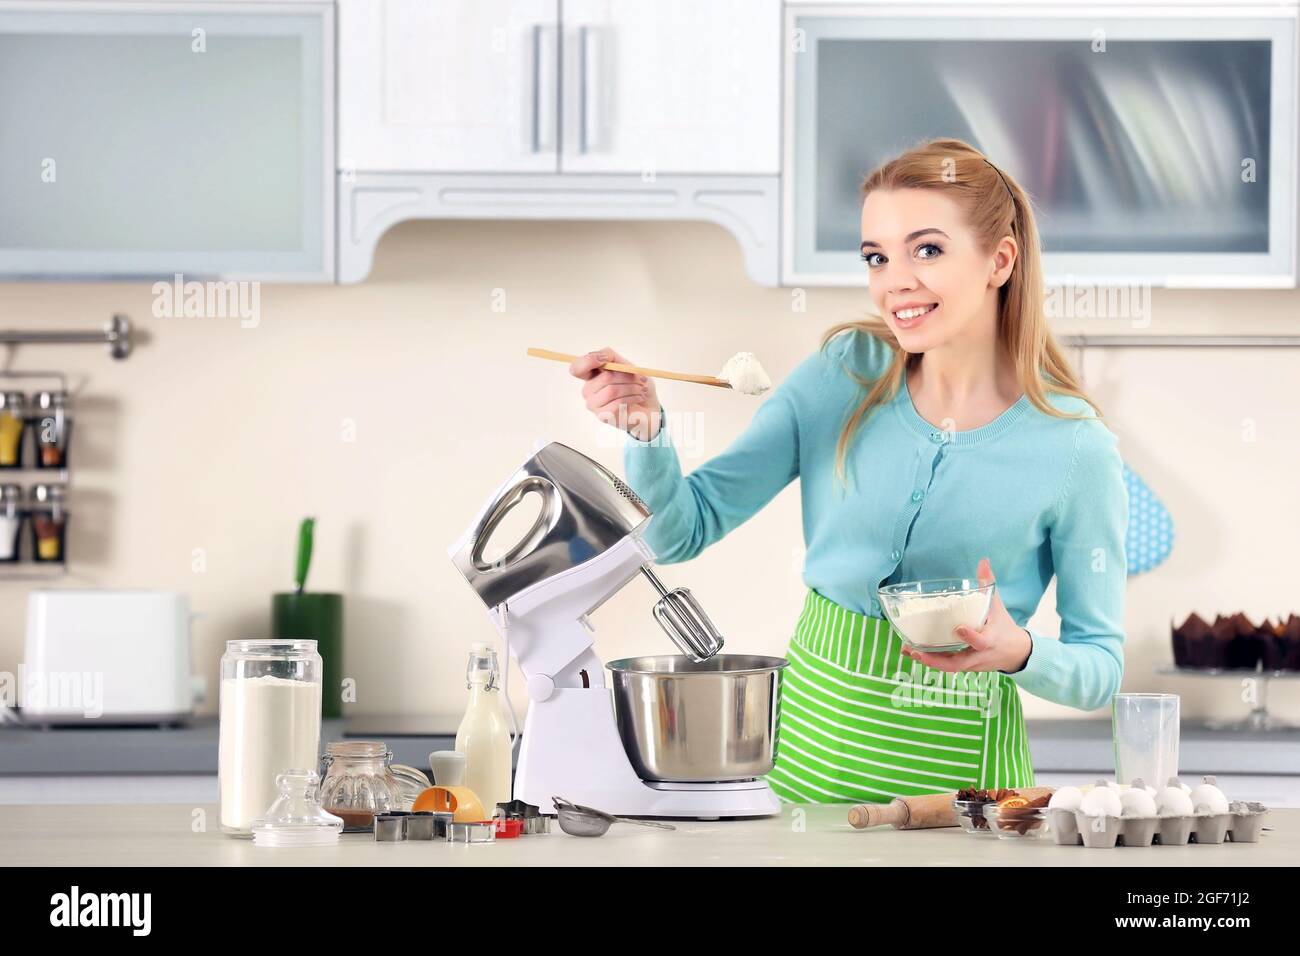 Junge Frau, die einem Küchenmaschine Mehl zu einem Teig für Männer  hinzufügt Stockfotografie - Alamy